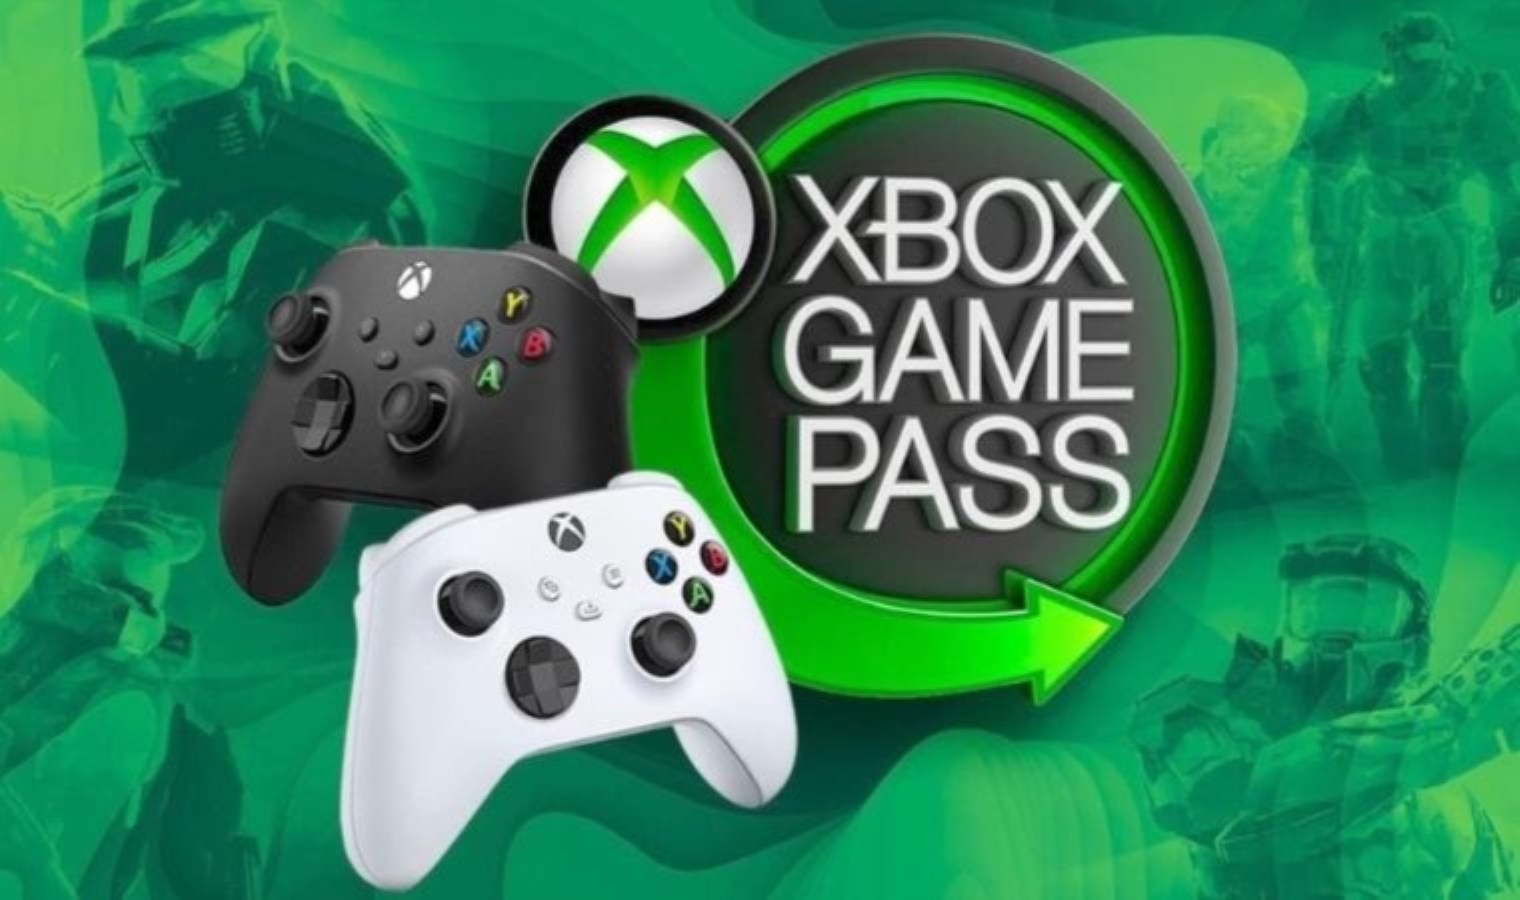 4 月份将添加到 Xbox Game Pass 的新游戏已公布 - Last Minute 科技新闻